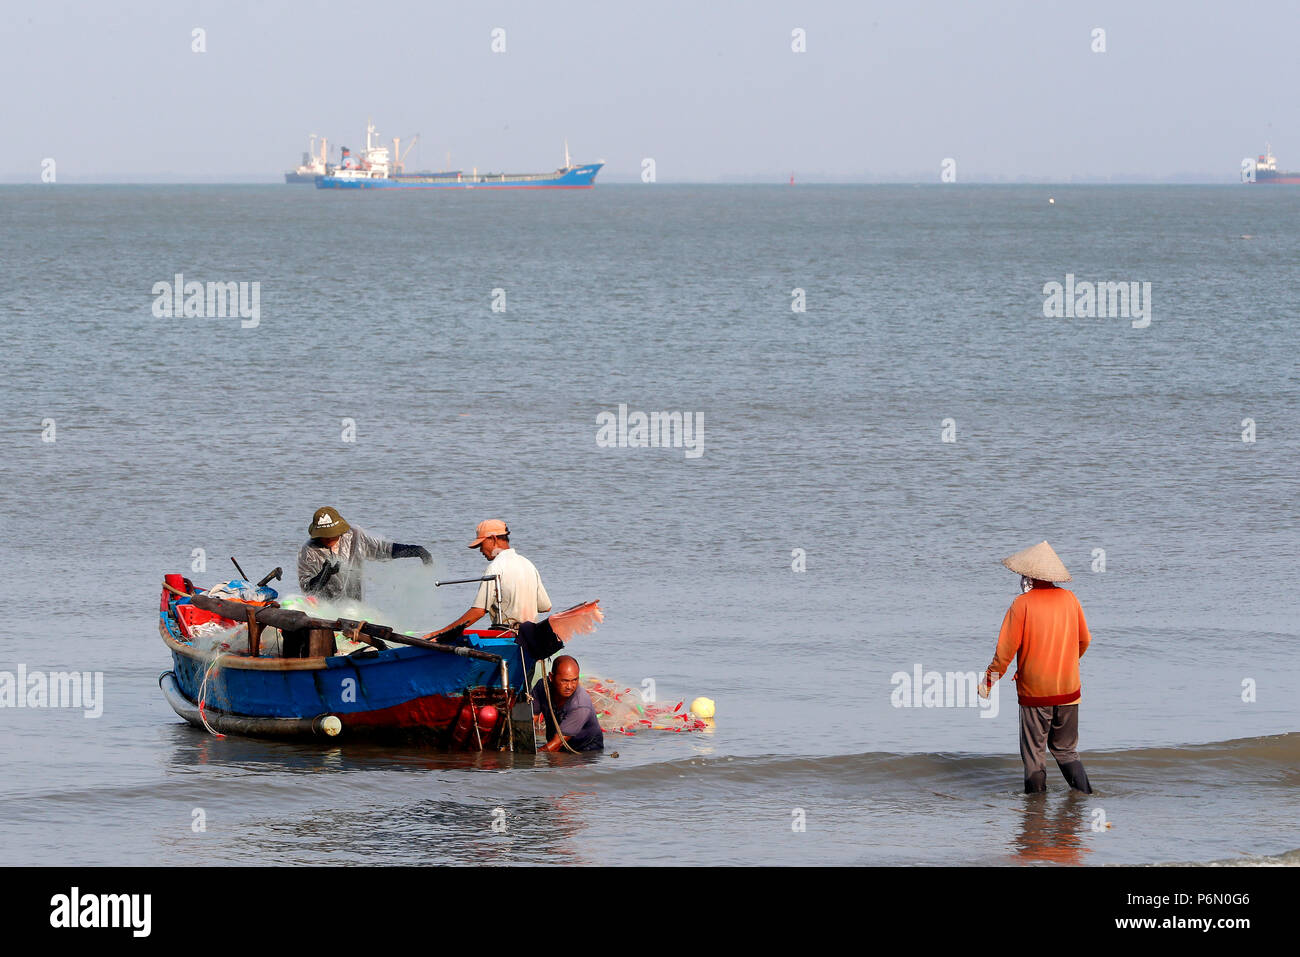 Hängen Dua Bay, Angeln Boot anreisen, am Strand. Vung Tau. Vietnam. Stockfoto